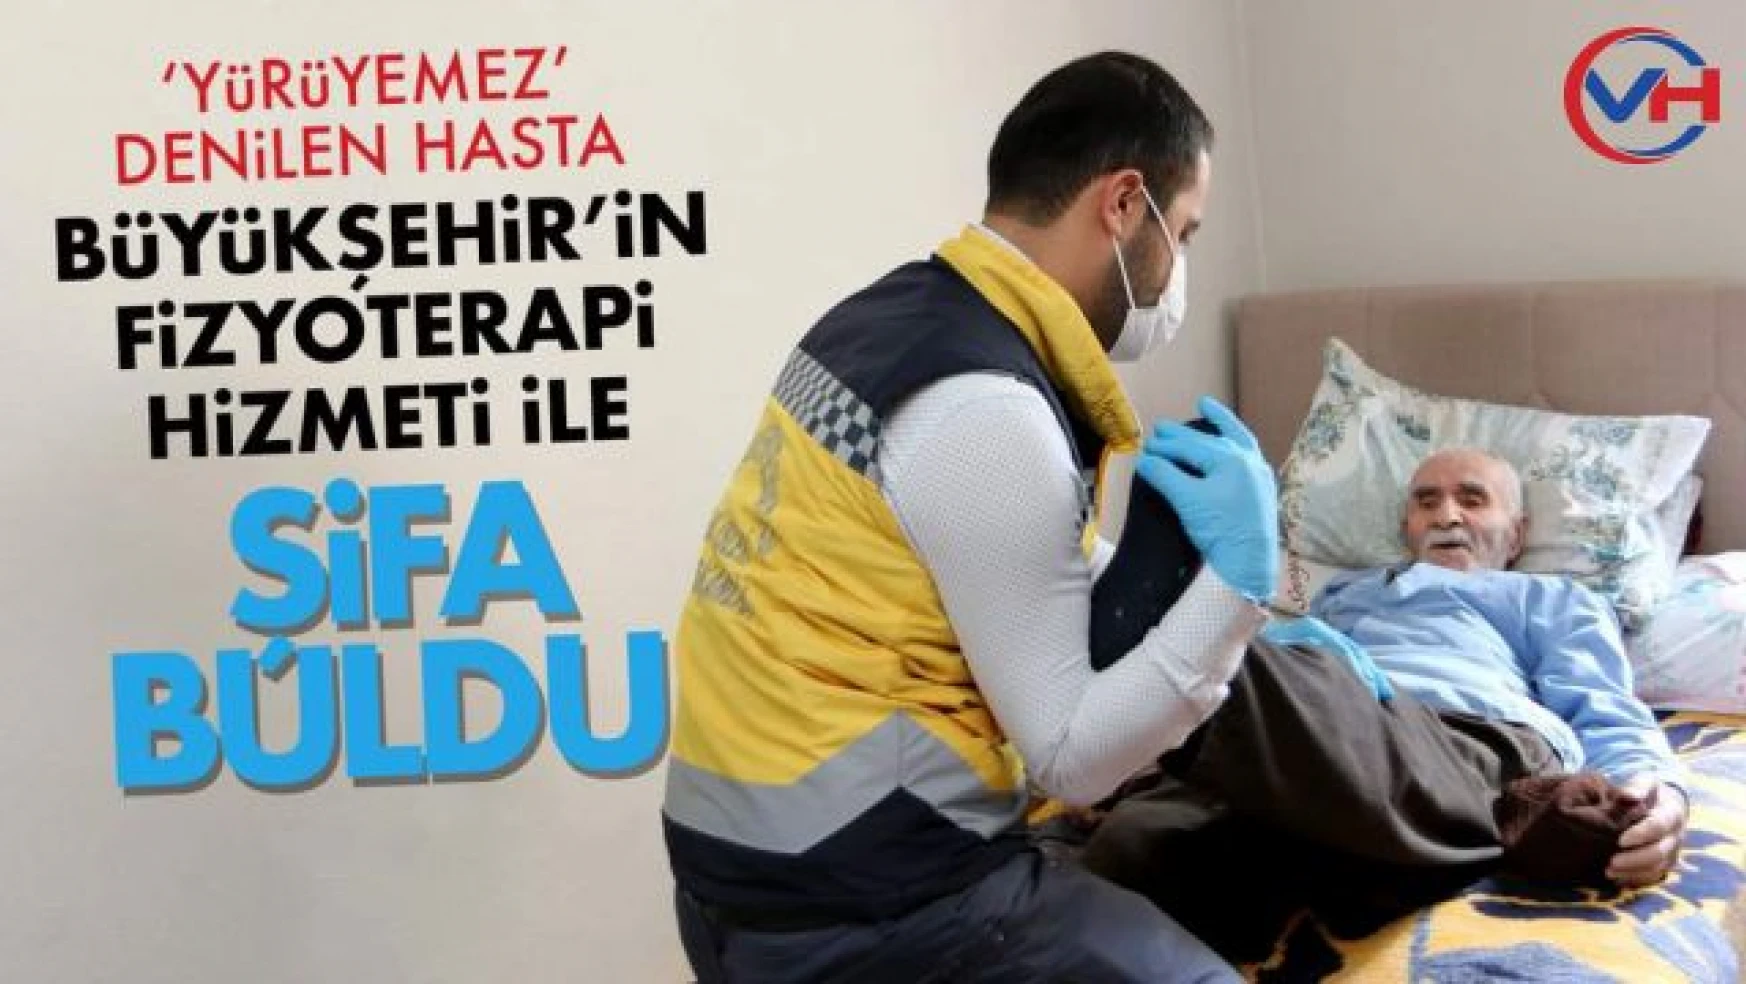 'Yürüyemez Denilen Hasta Büyükşehir'in Fizyoterapi Hizmeti ile Şifa Buldu